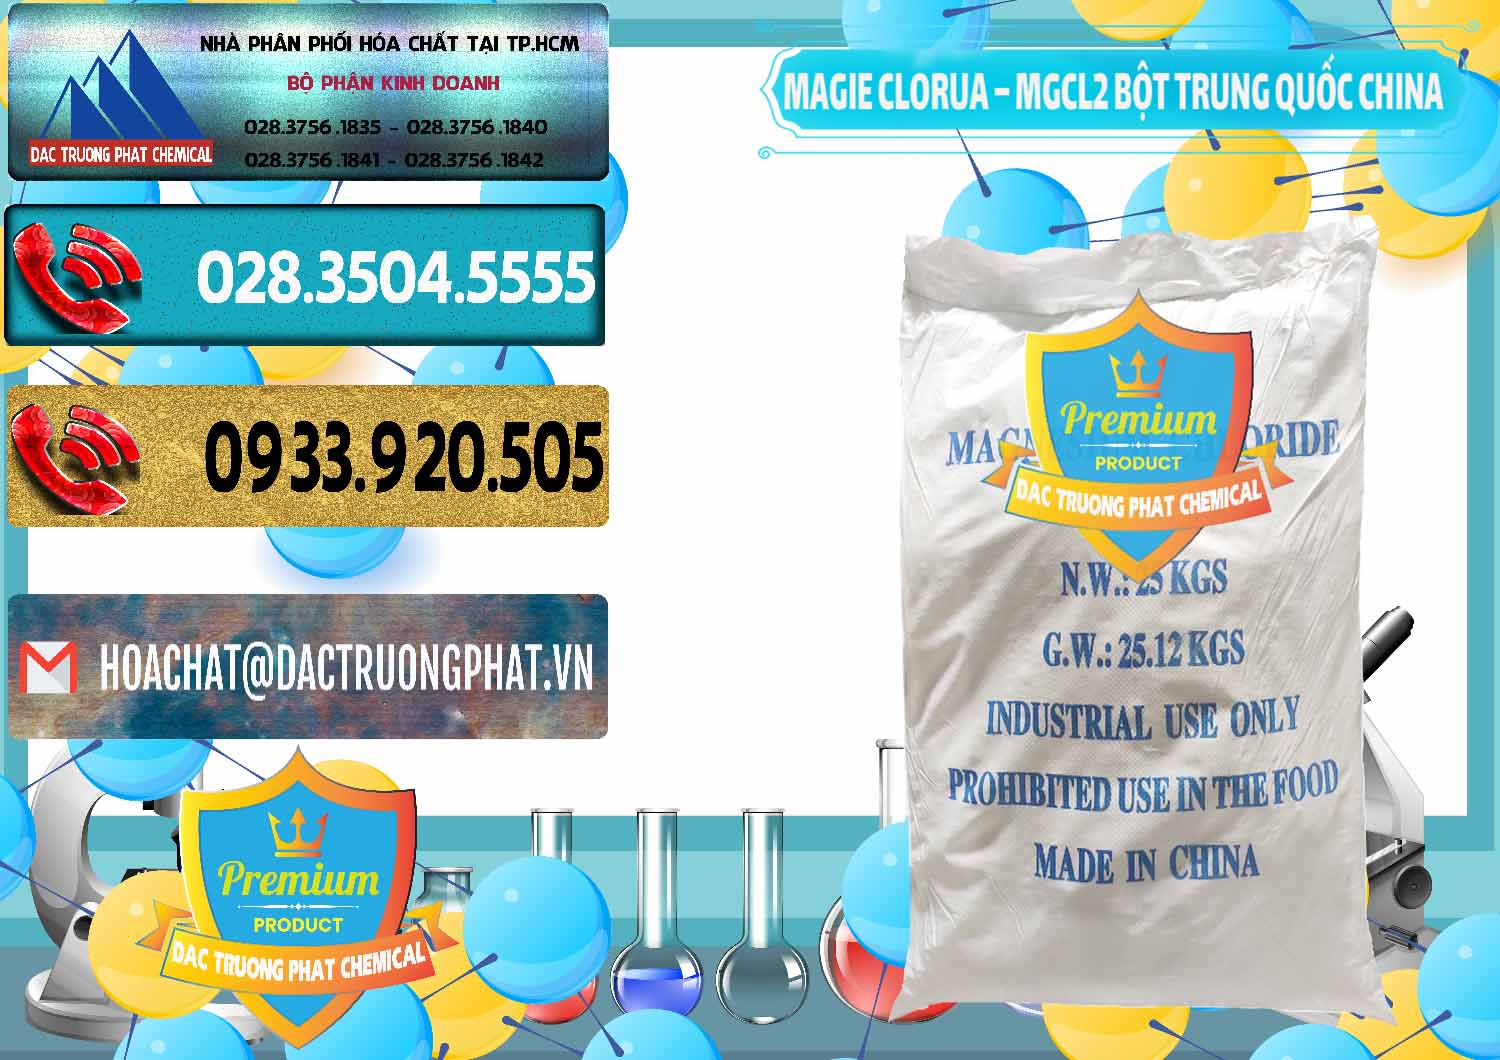 Cty chuyên nhập khẩu _ bán Magie Clorua – MGCL2 96% Dạng Bột Bao Chữ Xanh Trung Quốc China - 0207 - Đơn vị chuyên kinh doanh và phân phối hóa chất tại TP.HCM - hoachatdetnhuom.com